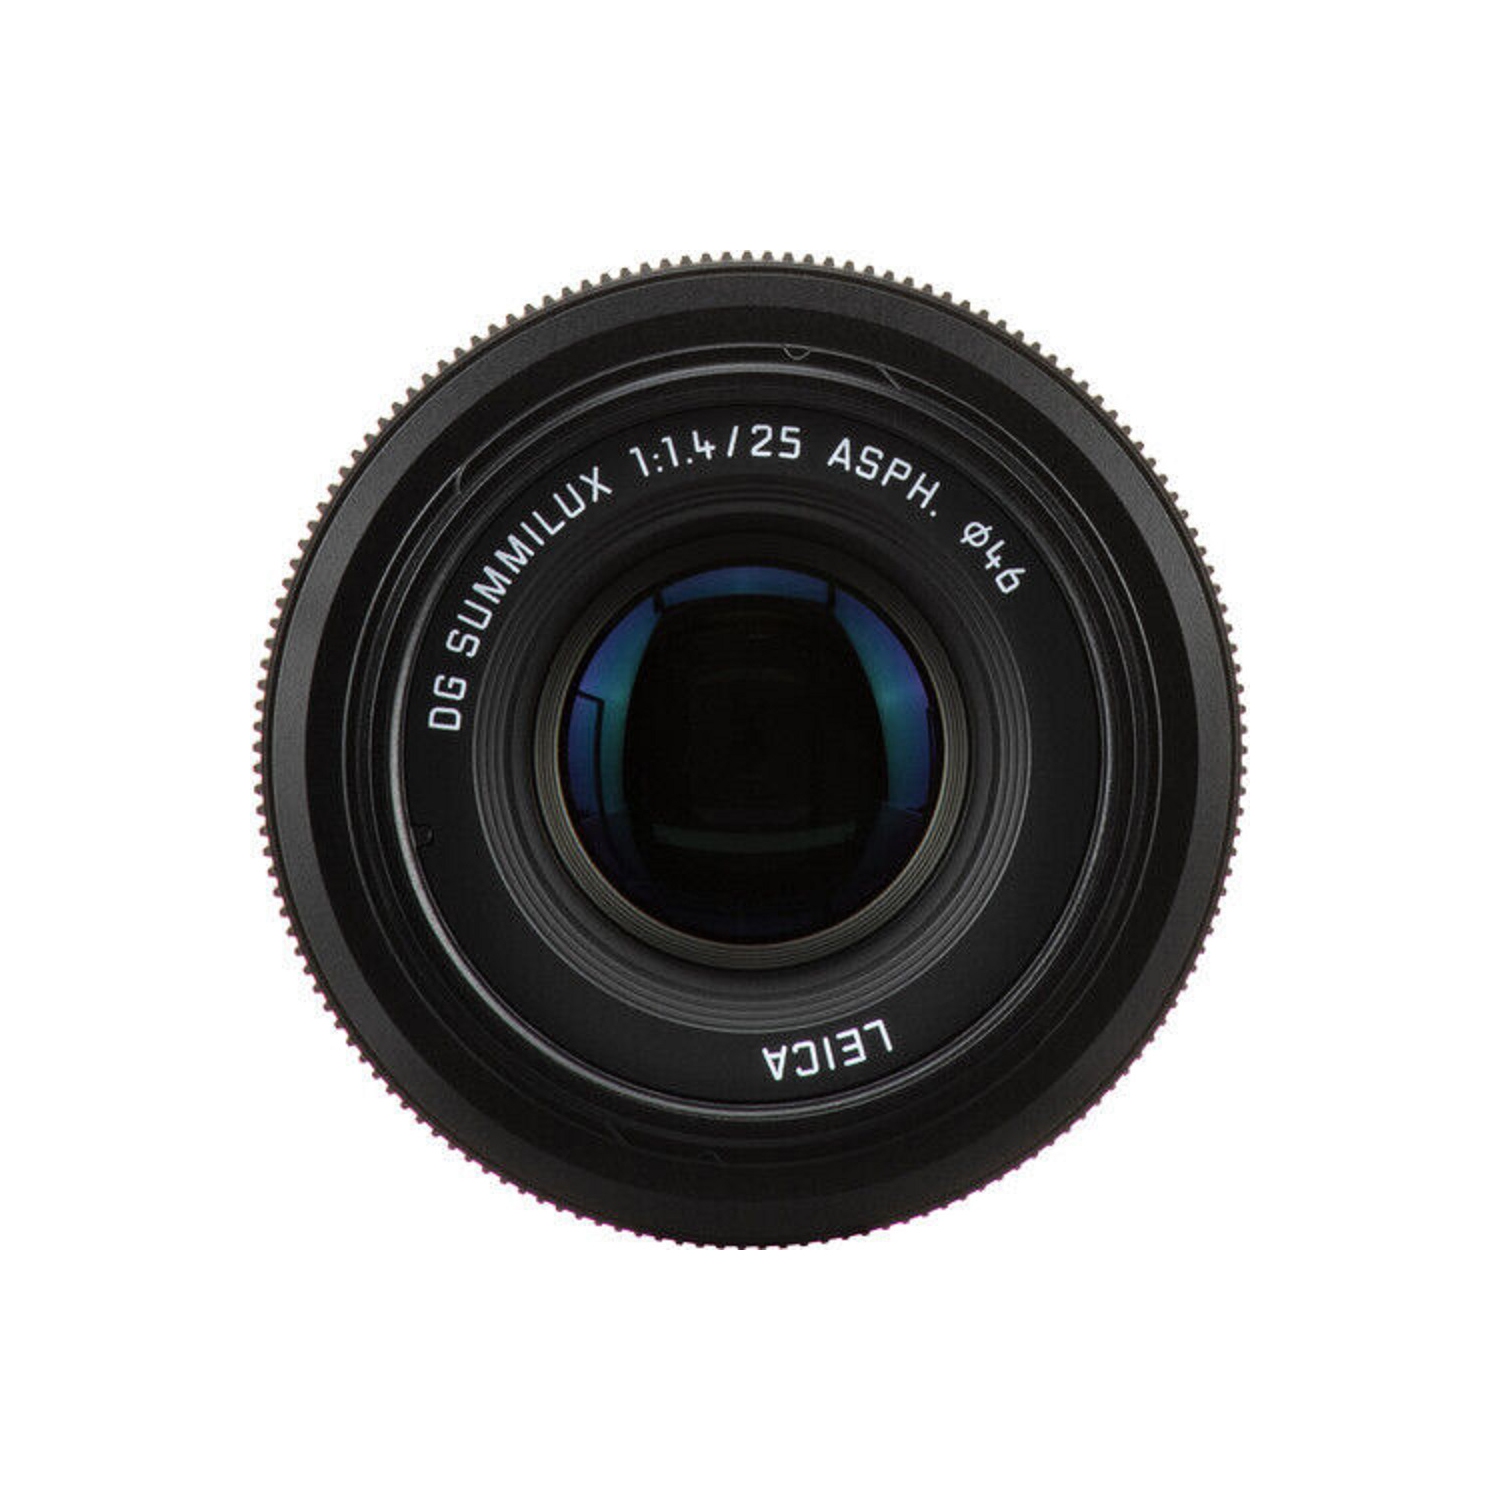 Panasonic Leica DG Summilux 25mm f/1.4 II ASPH. Lens H-XA025 + UV 